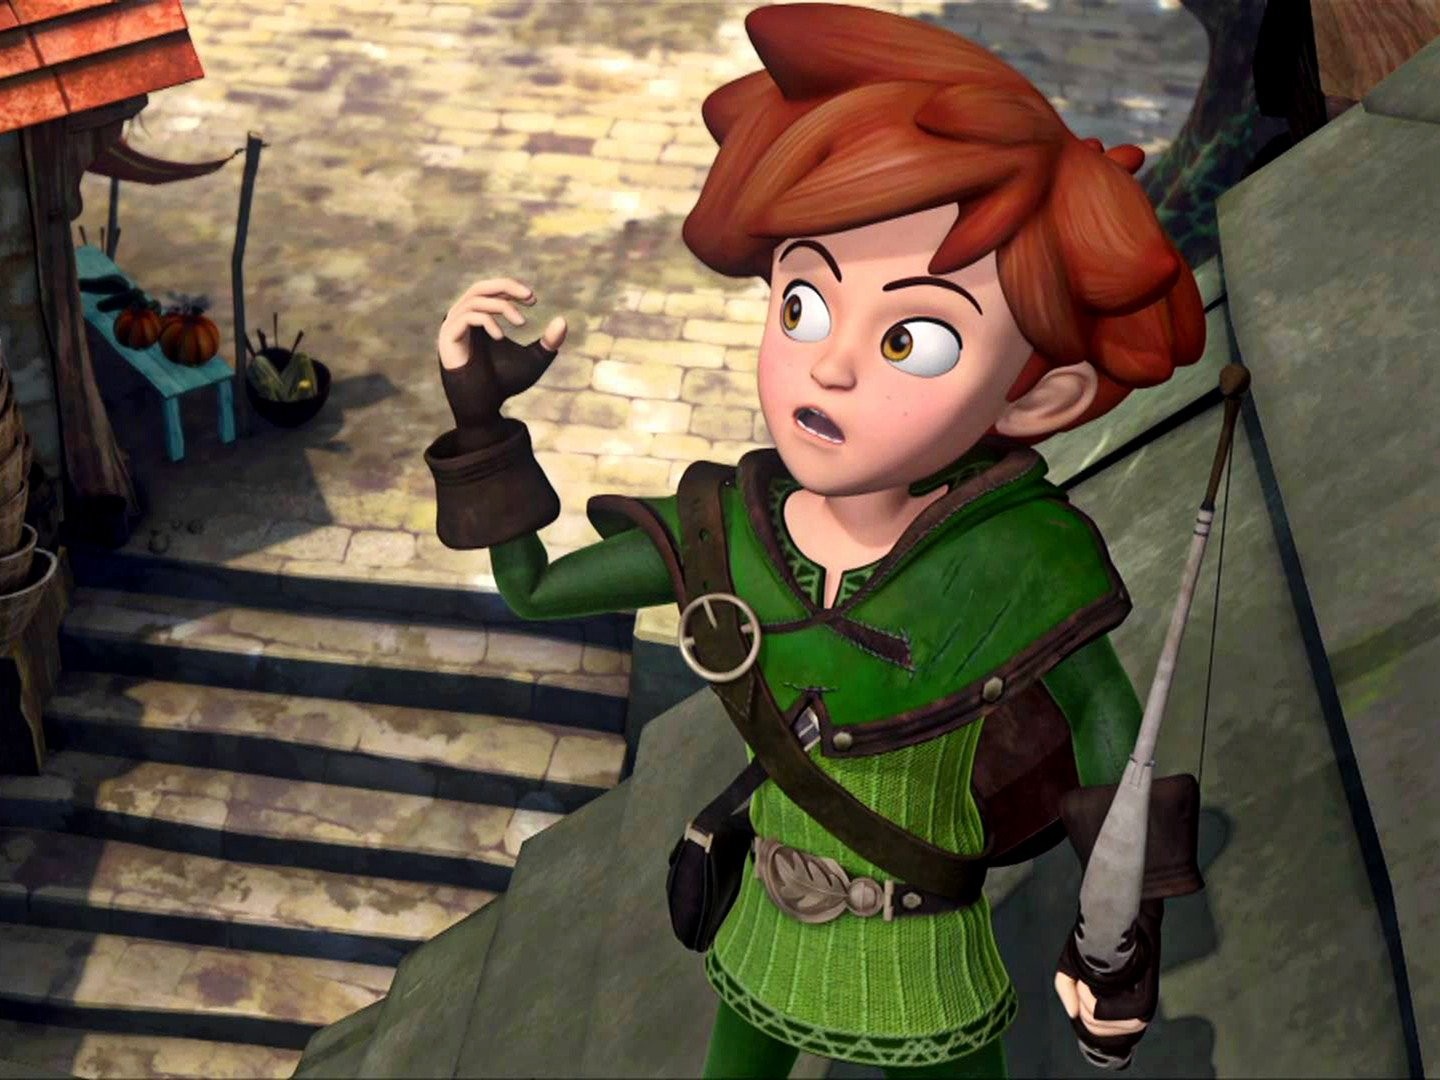 Robin Hood: Mischief in Sherwood TV Review